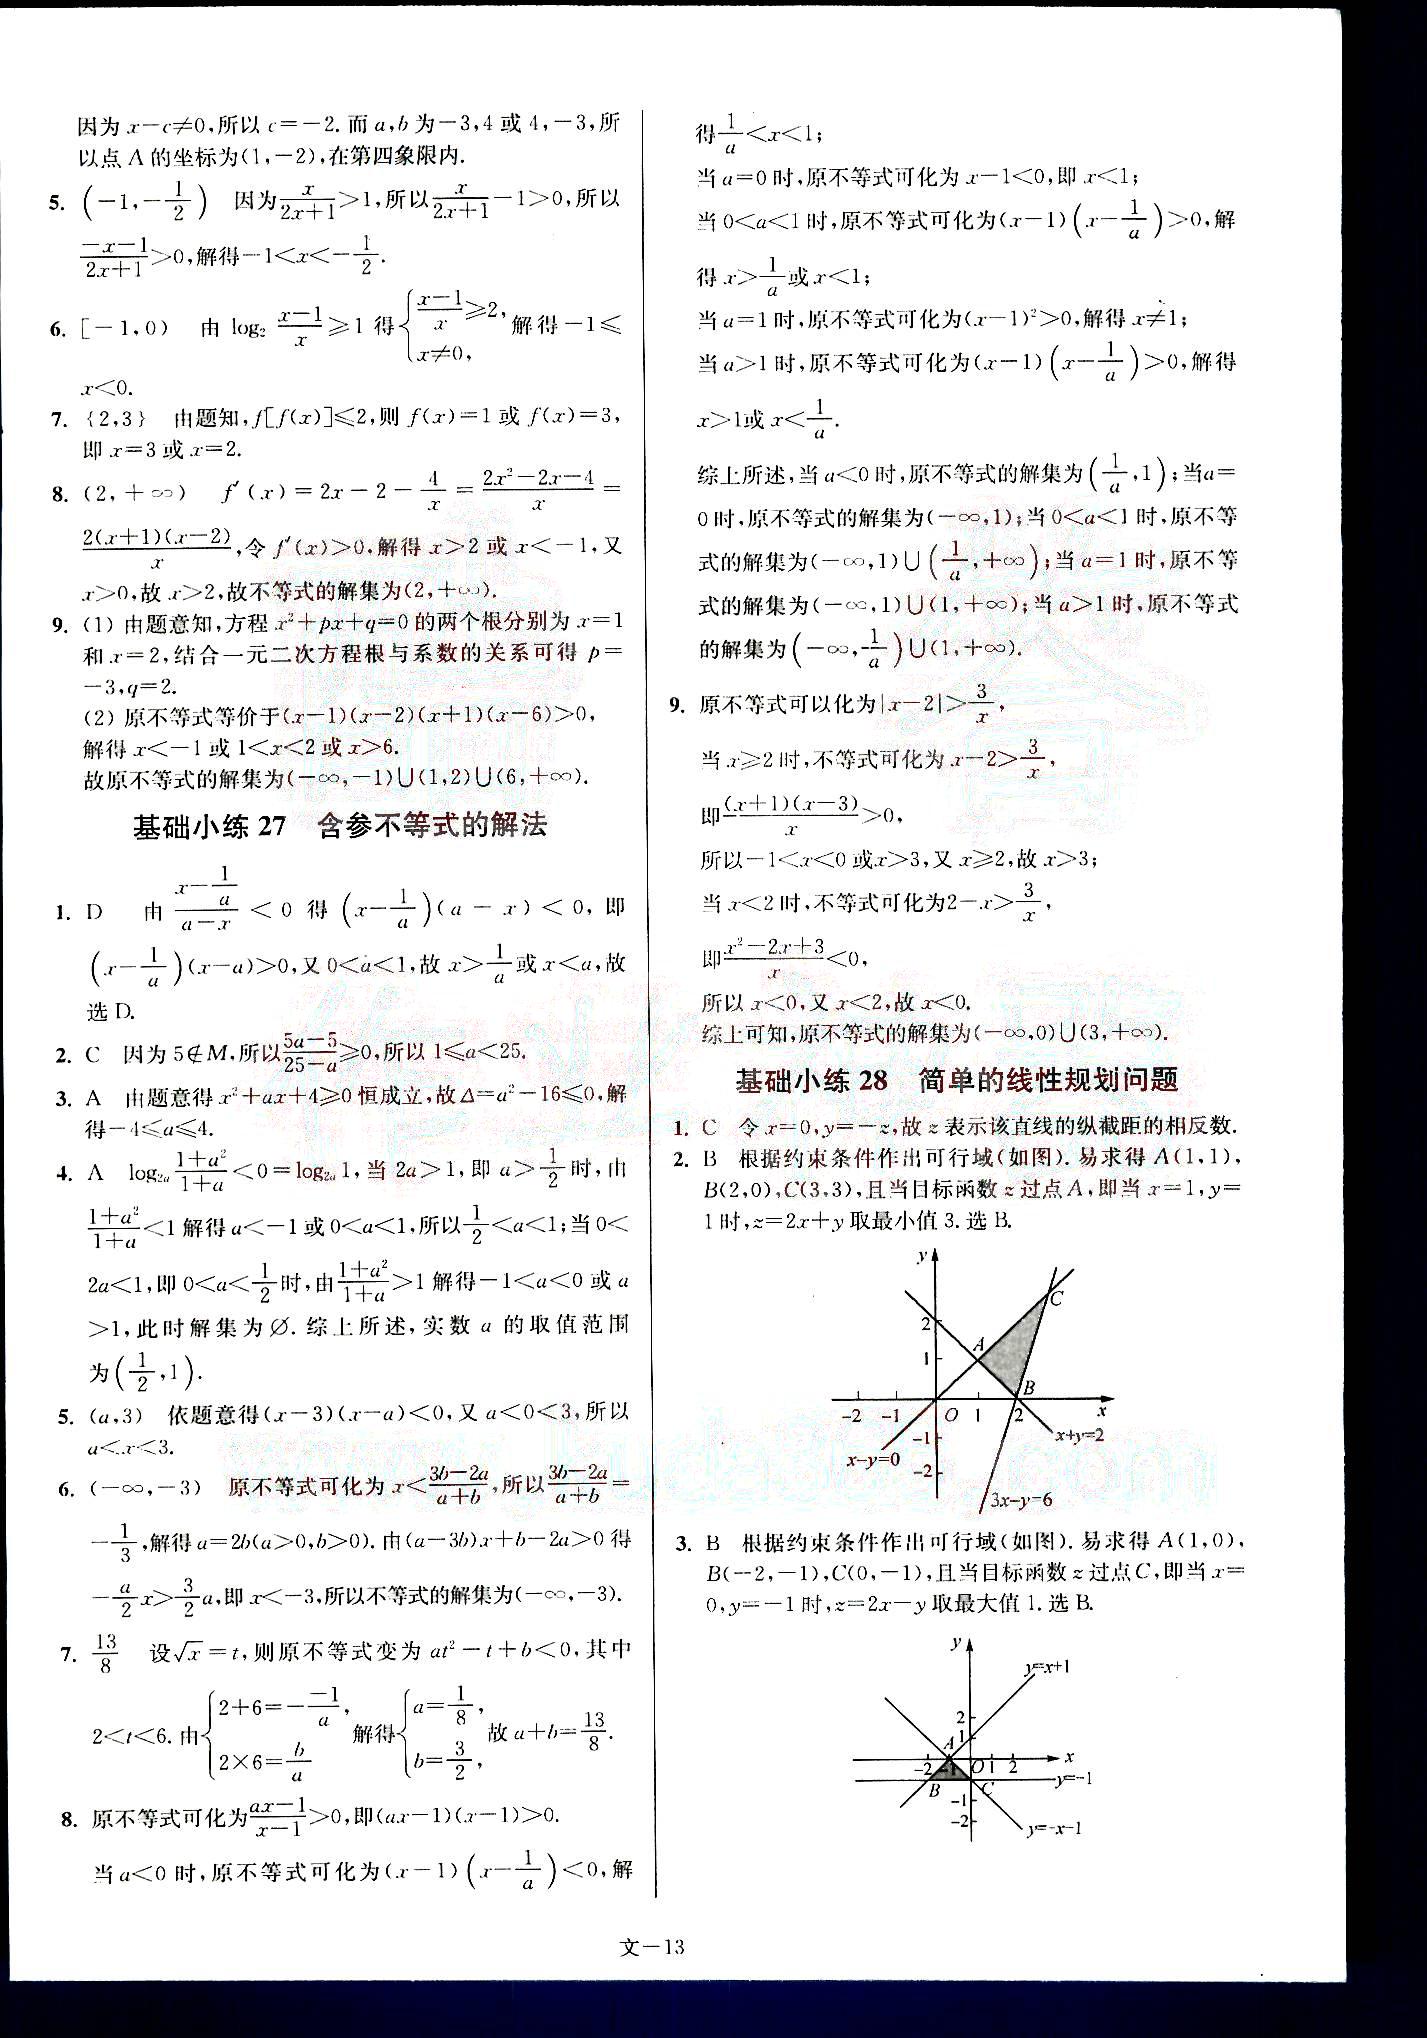 小题狂做-高考数学-文科-最基础篇南京大学出版社 第3部分 [3]